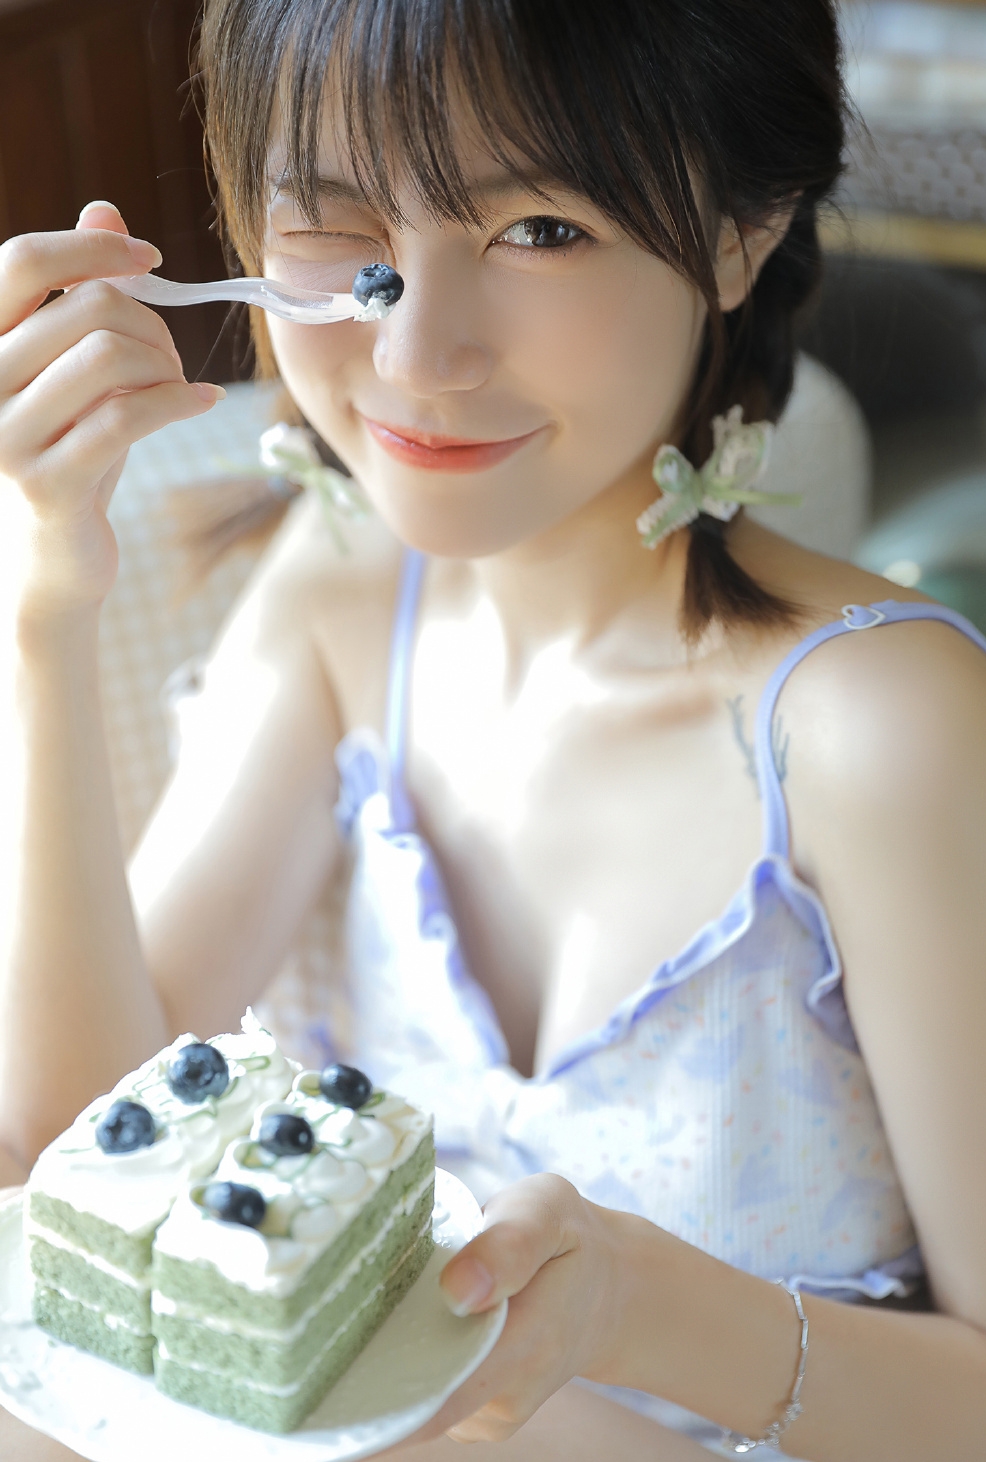 吃着蓝莓奶油蛋糕的可爱双麻花辫短发短裤吊带背心美少女好看写真私房图片